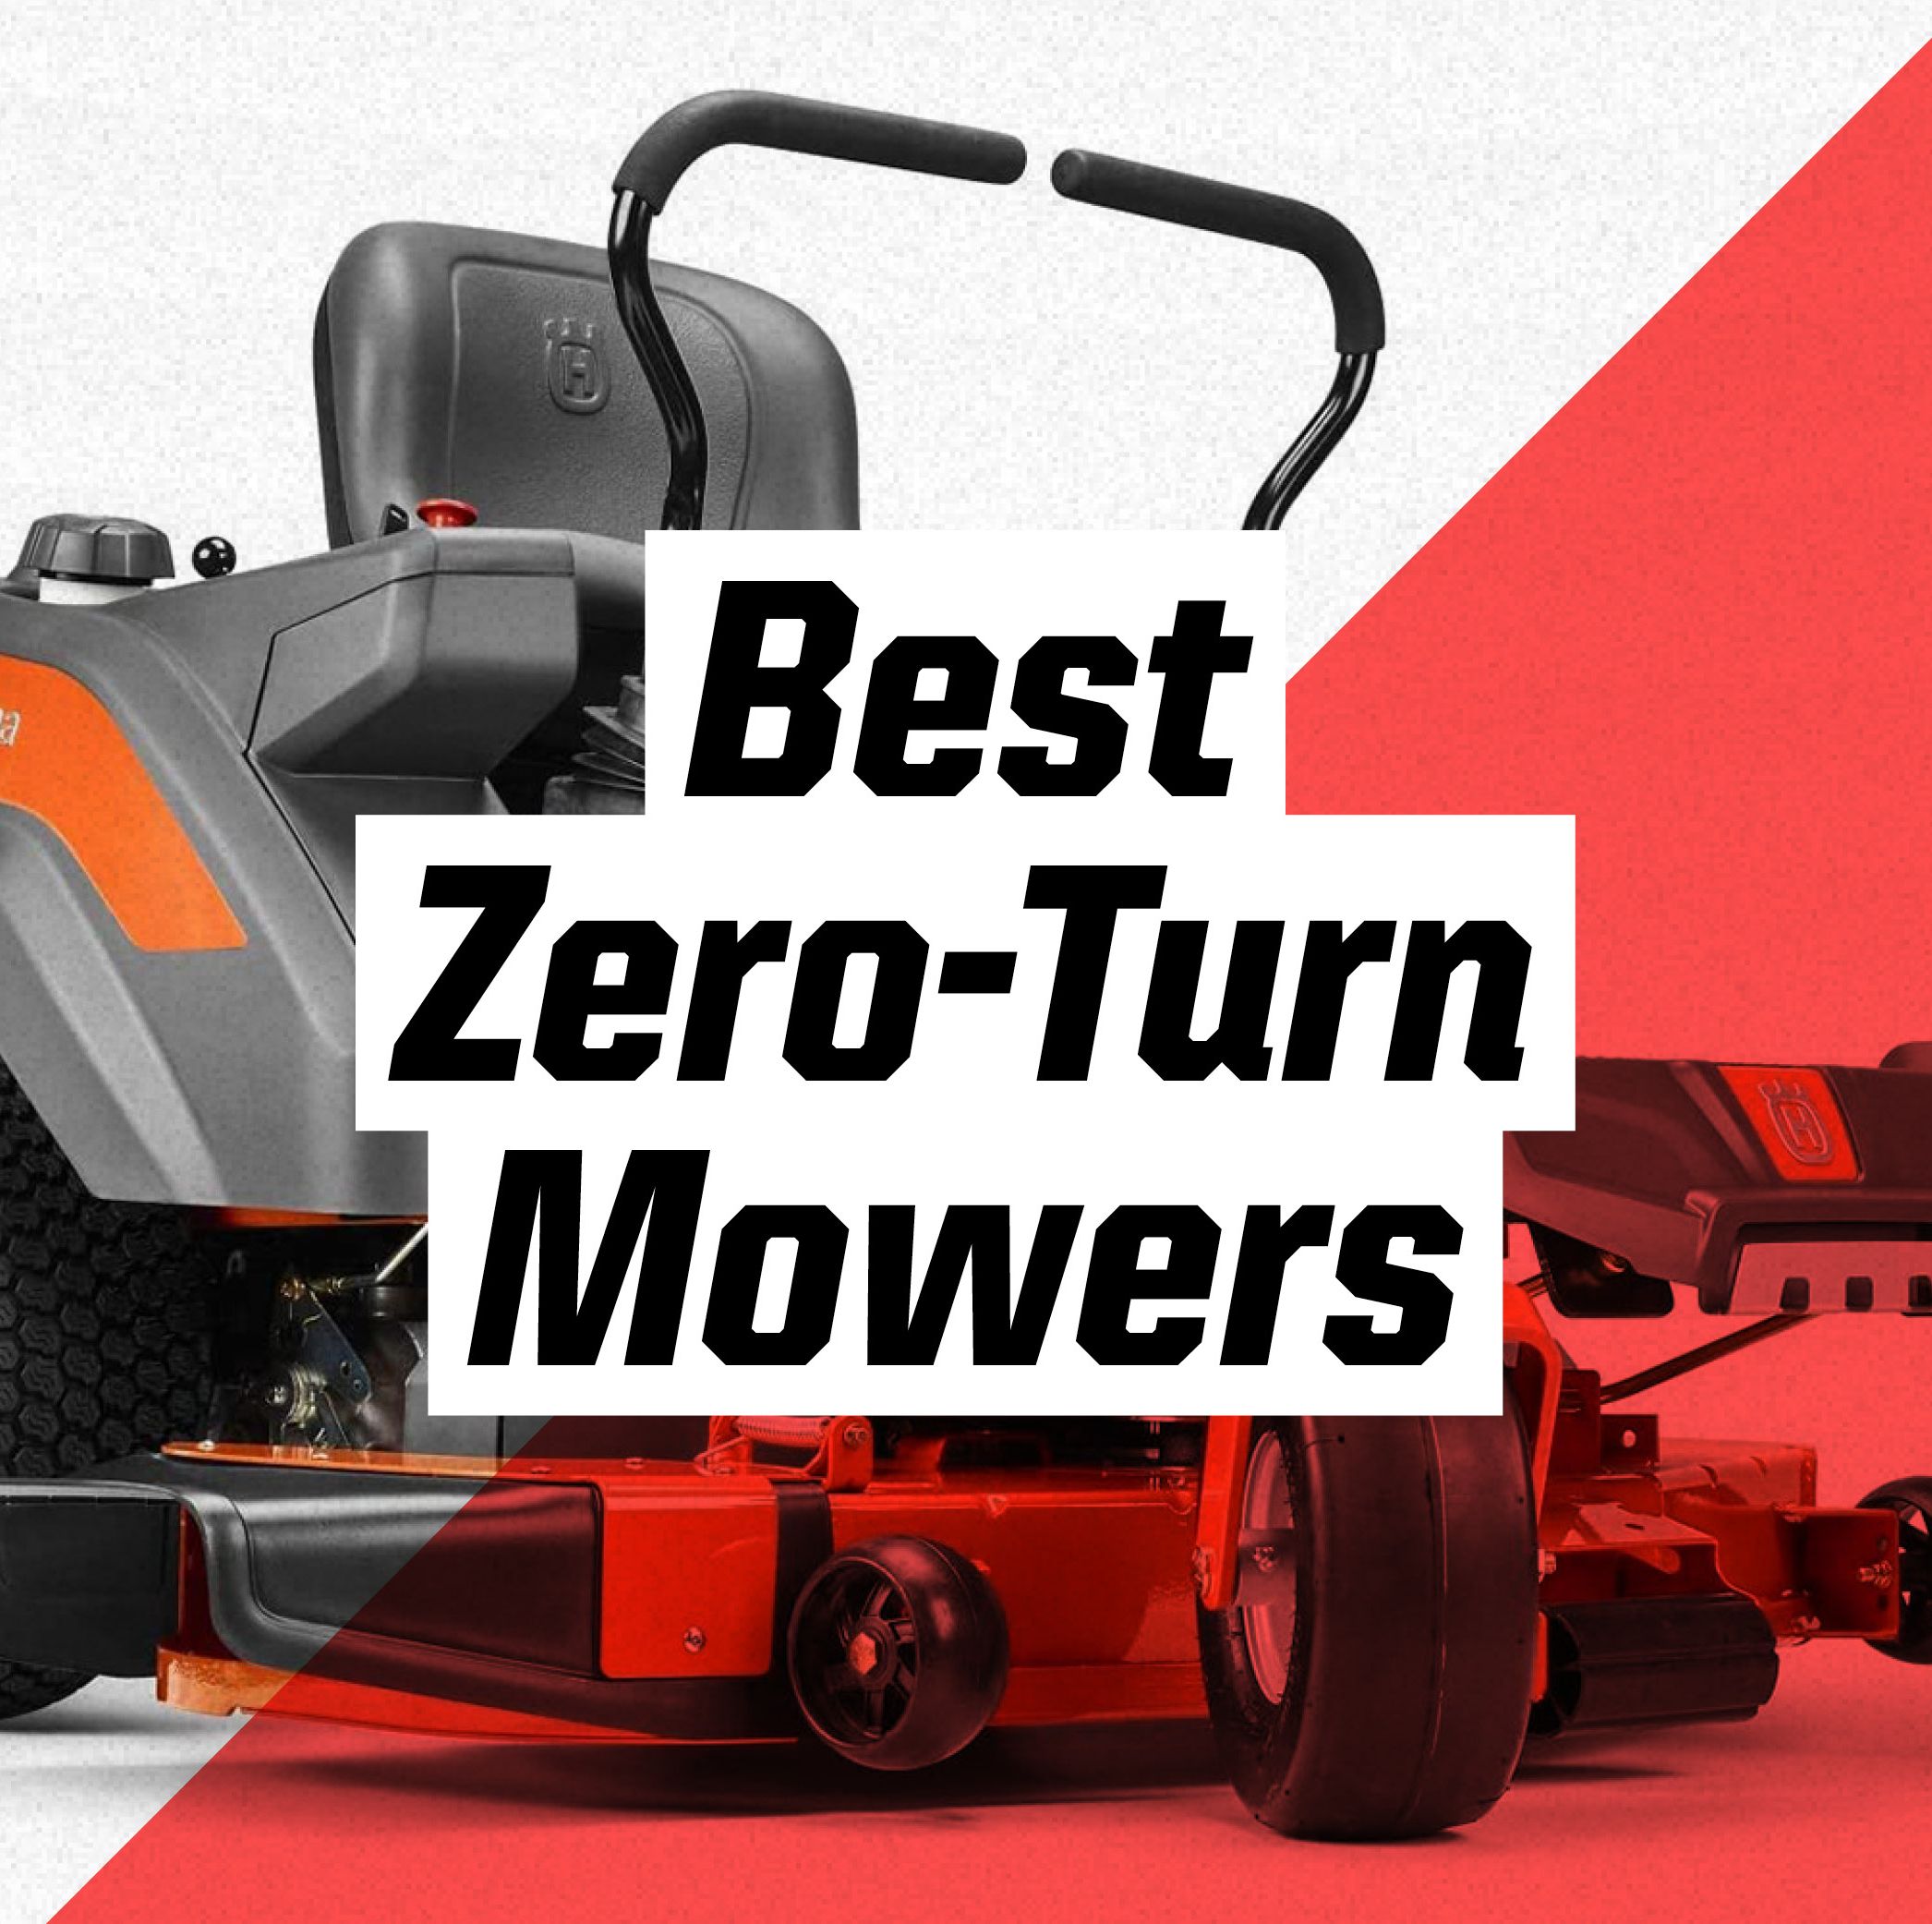 The Best Zero-Turn Mowers